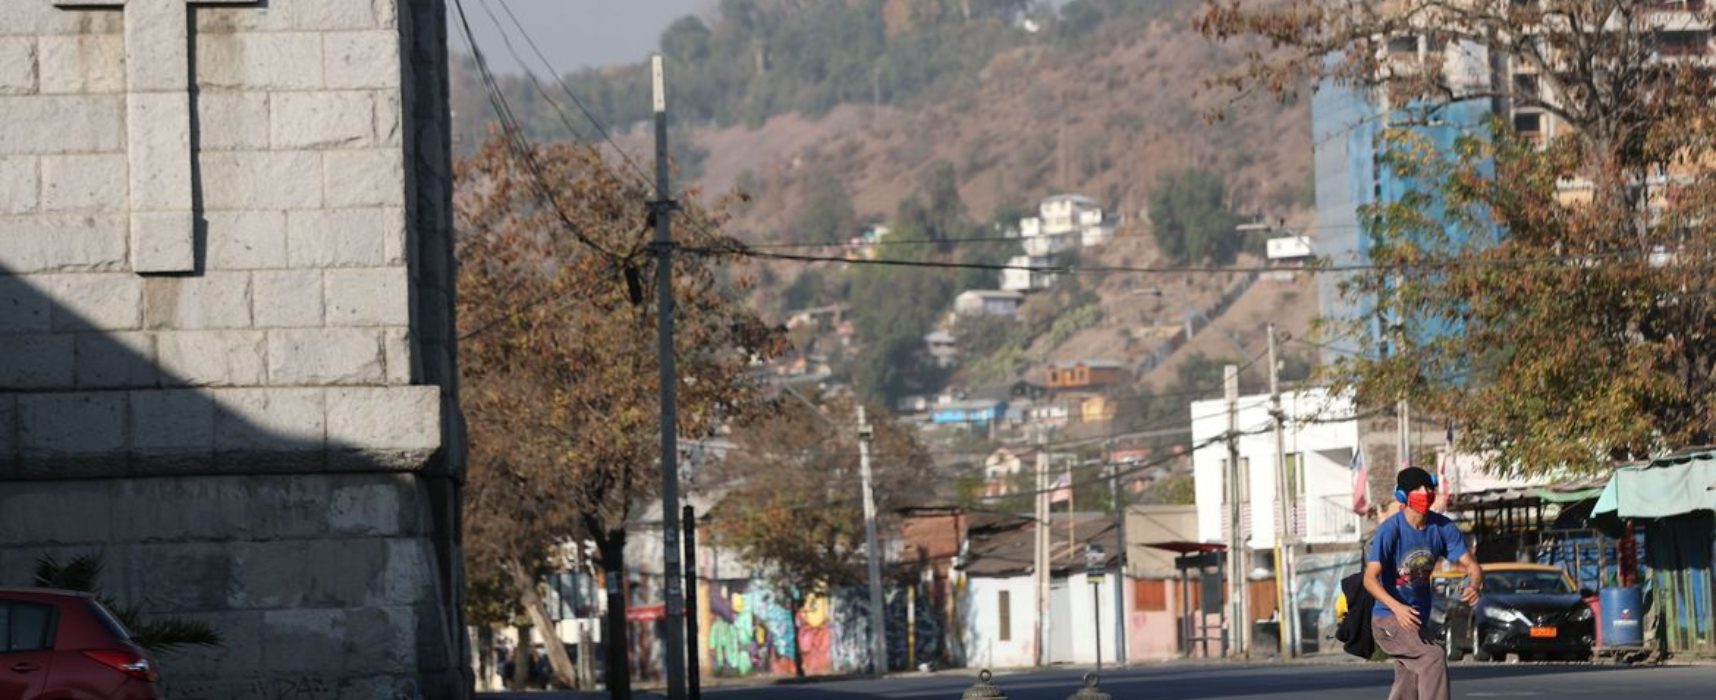 Chile chega a 1 milhão de casos de covid-19 e fecha fronteiras